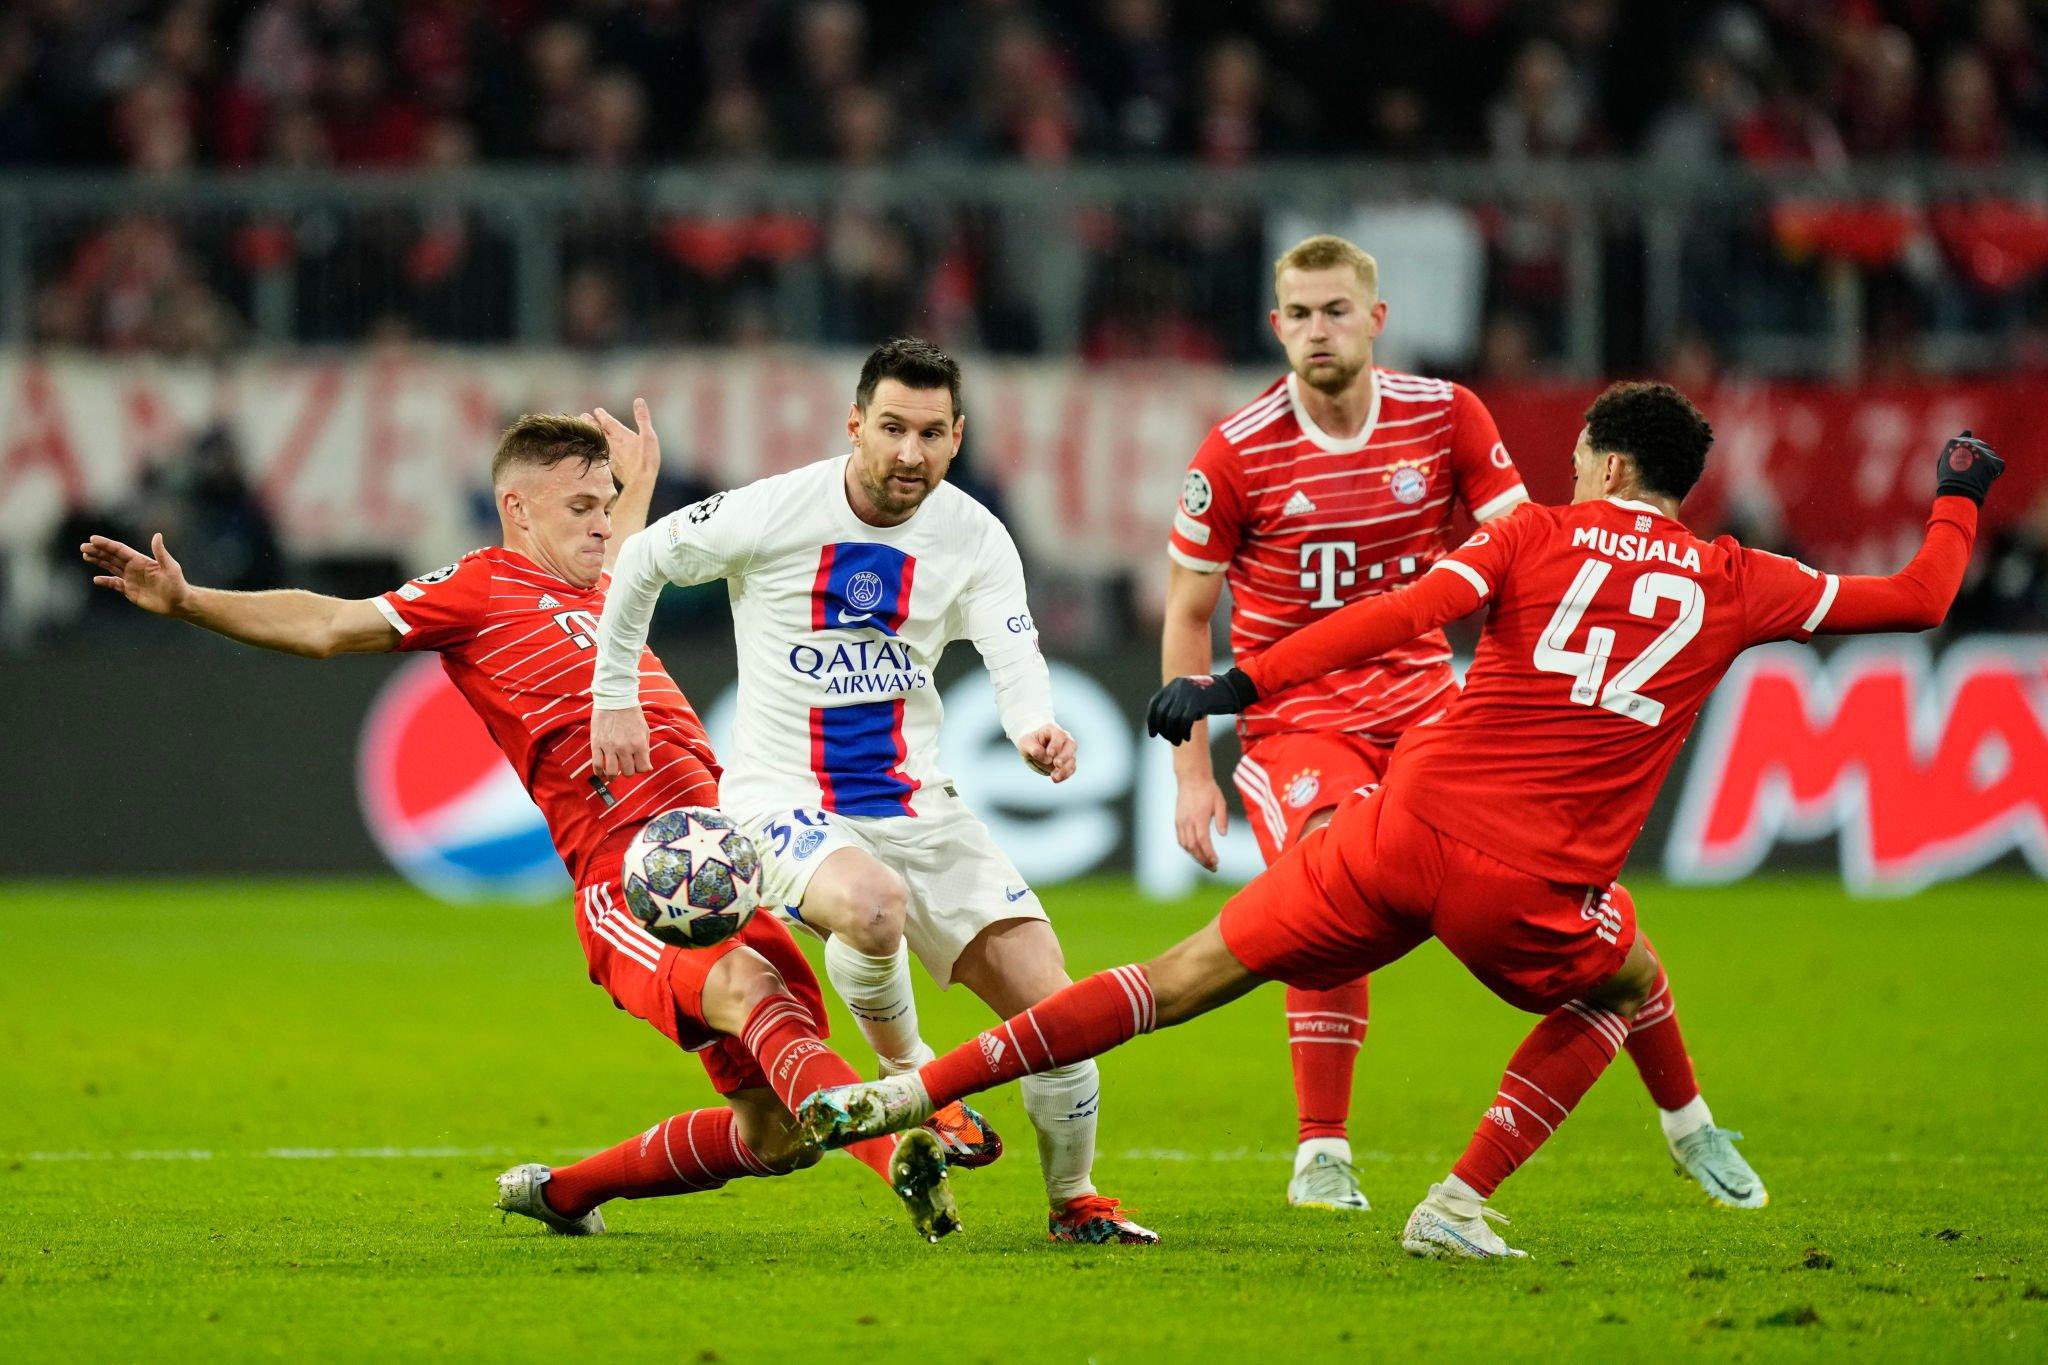 Sorotan Bayern Munich vs PSG: Bayern Munich MENGHASILKAN PSG sekali lagi untuk mencapai perempat final Liga Champions UEFA